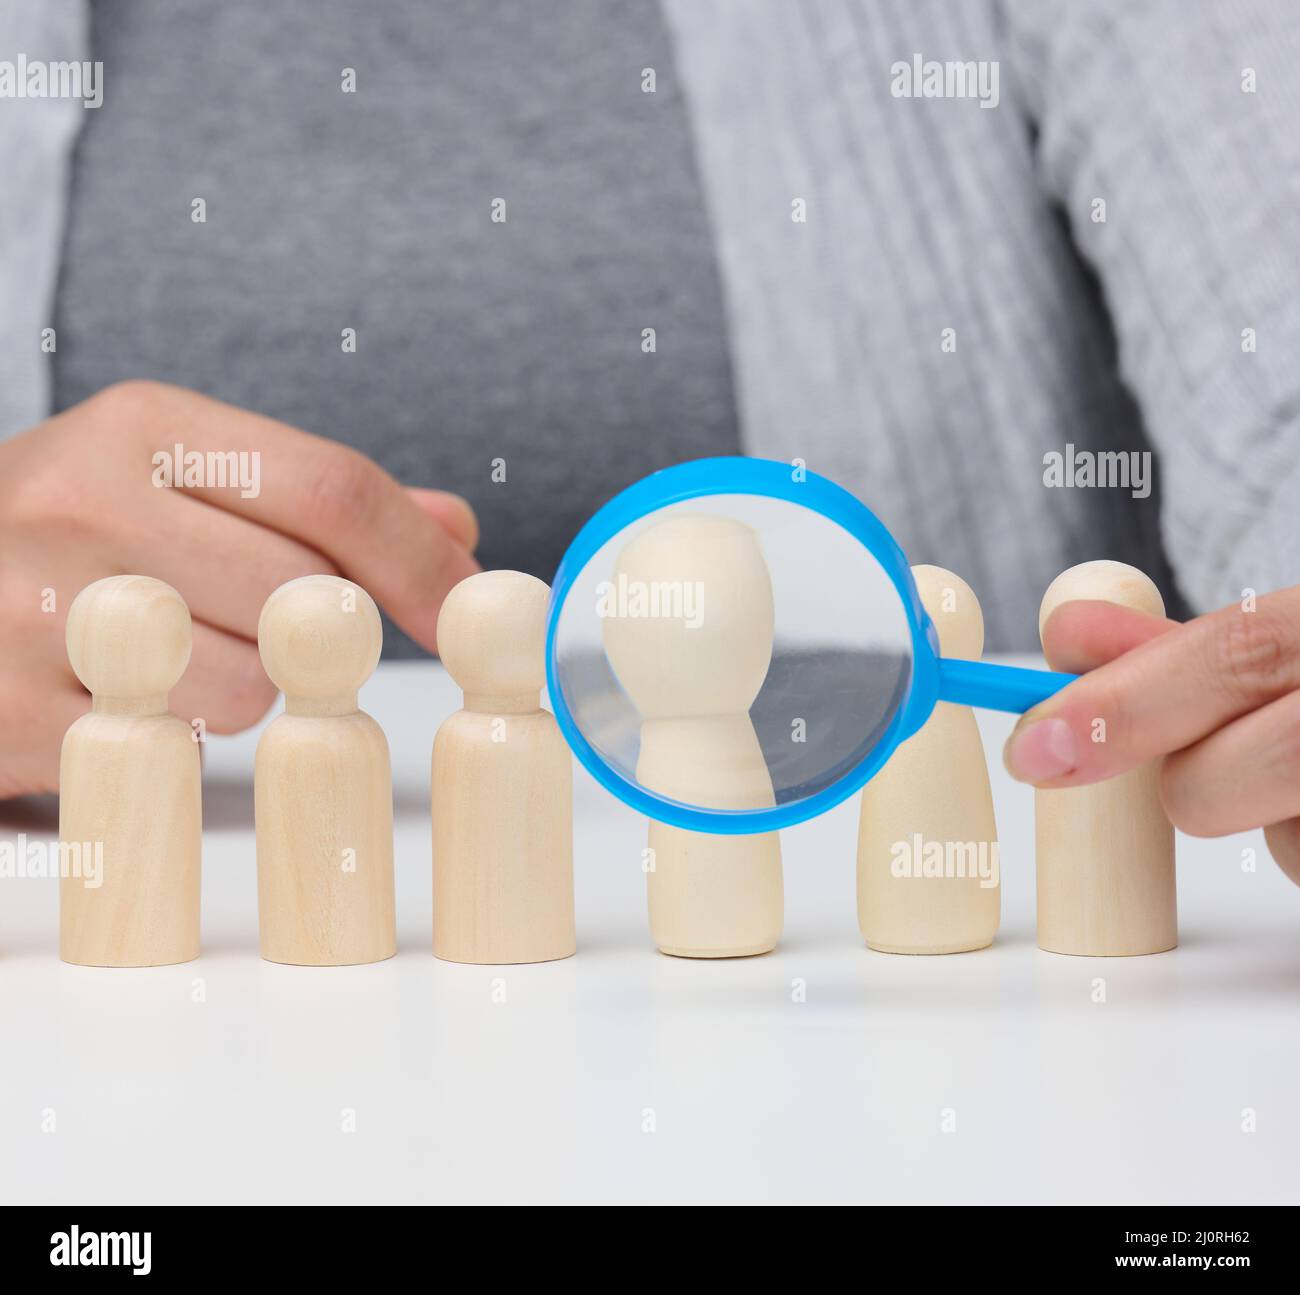 Figurines d'hommes sur une table blanche, une main femelle tient une loupe sur une. Concept de recherche d'employés dans la co Banque D'Images